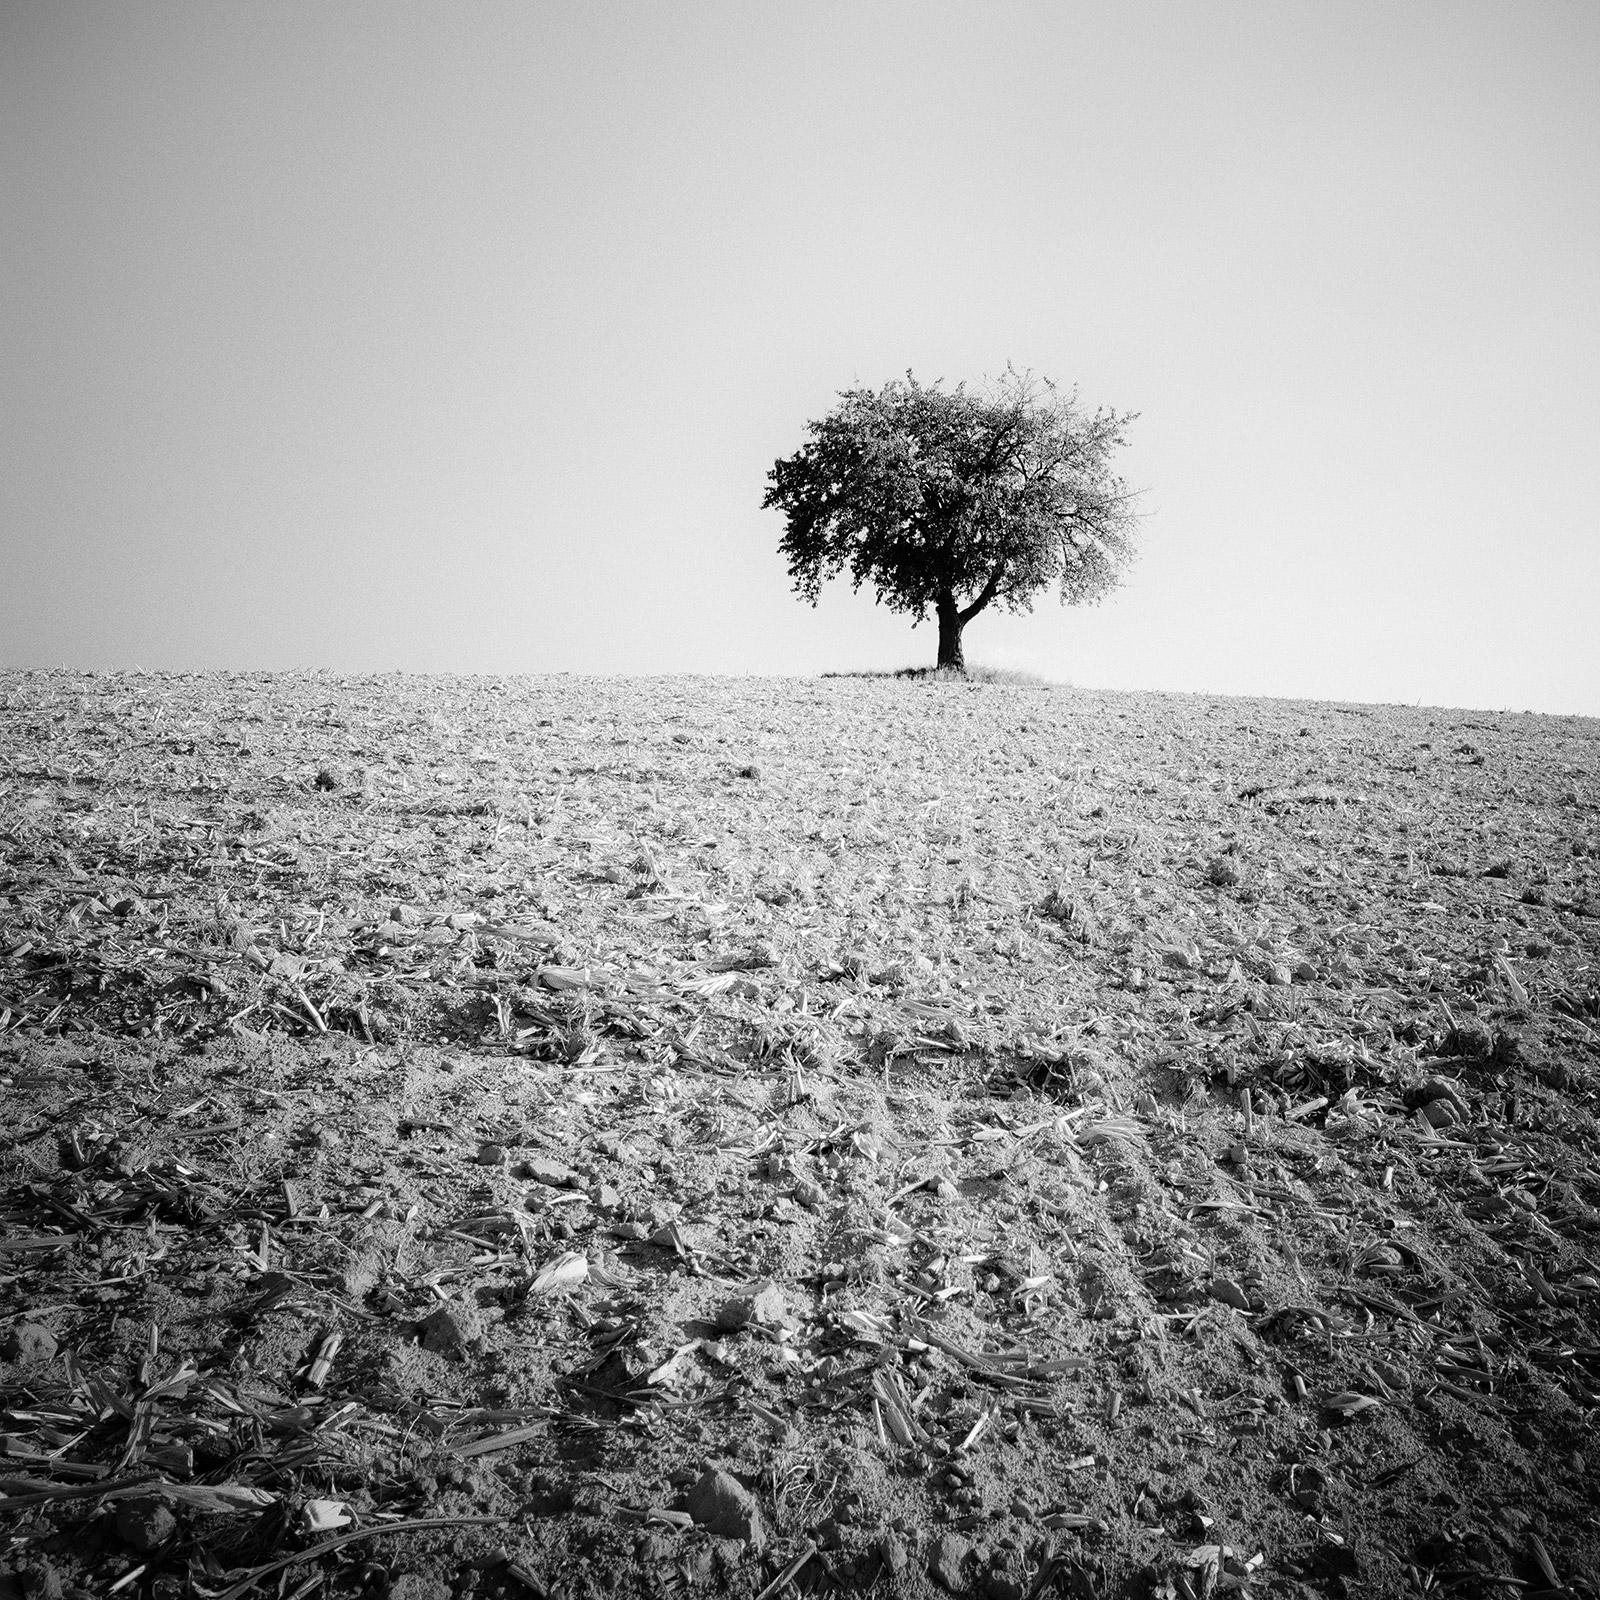 Landscape Photograph Gerald Berghammer - Arbre solitaire, champ moissonné, photographie minimaliste en noir et blanc, paysage